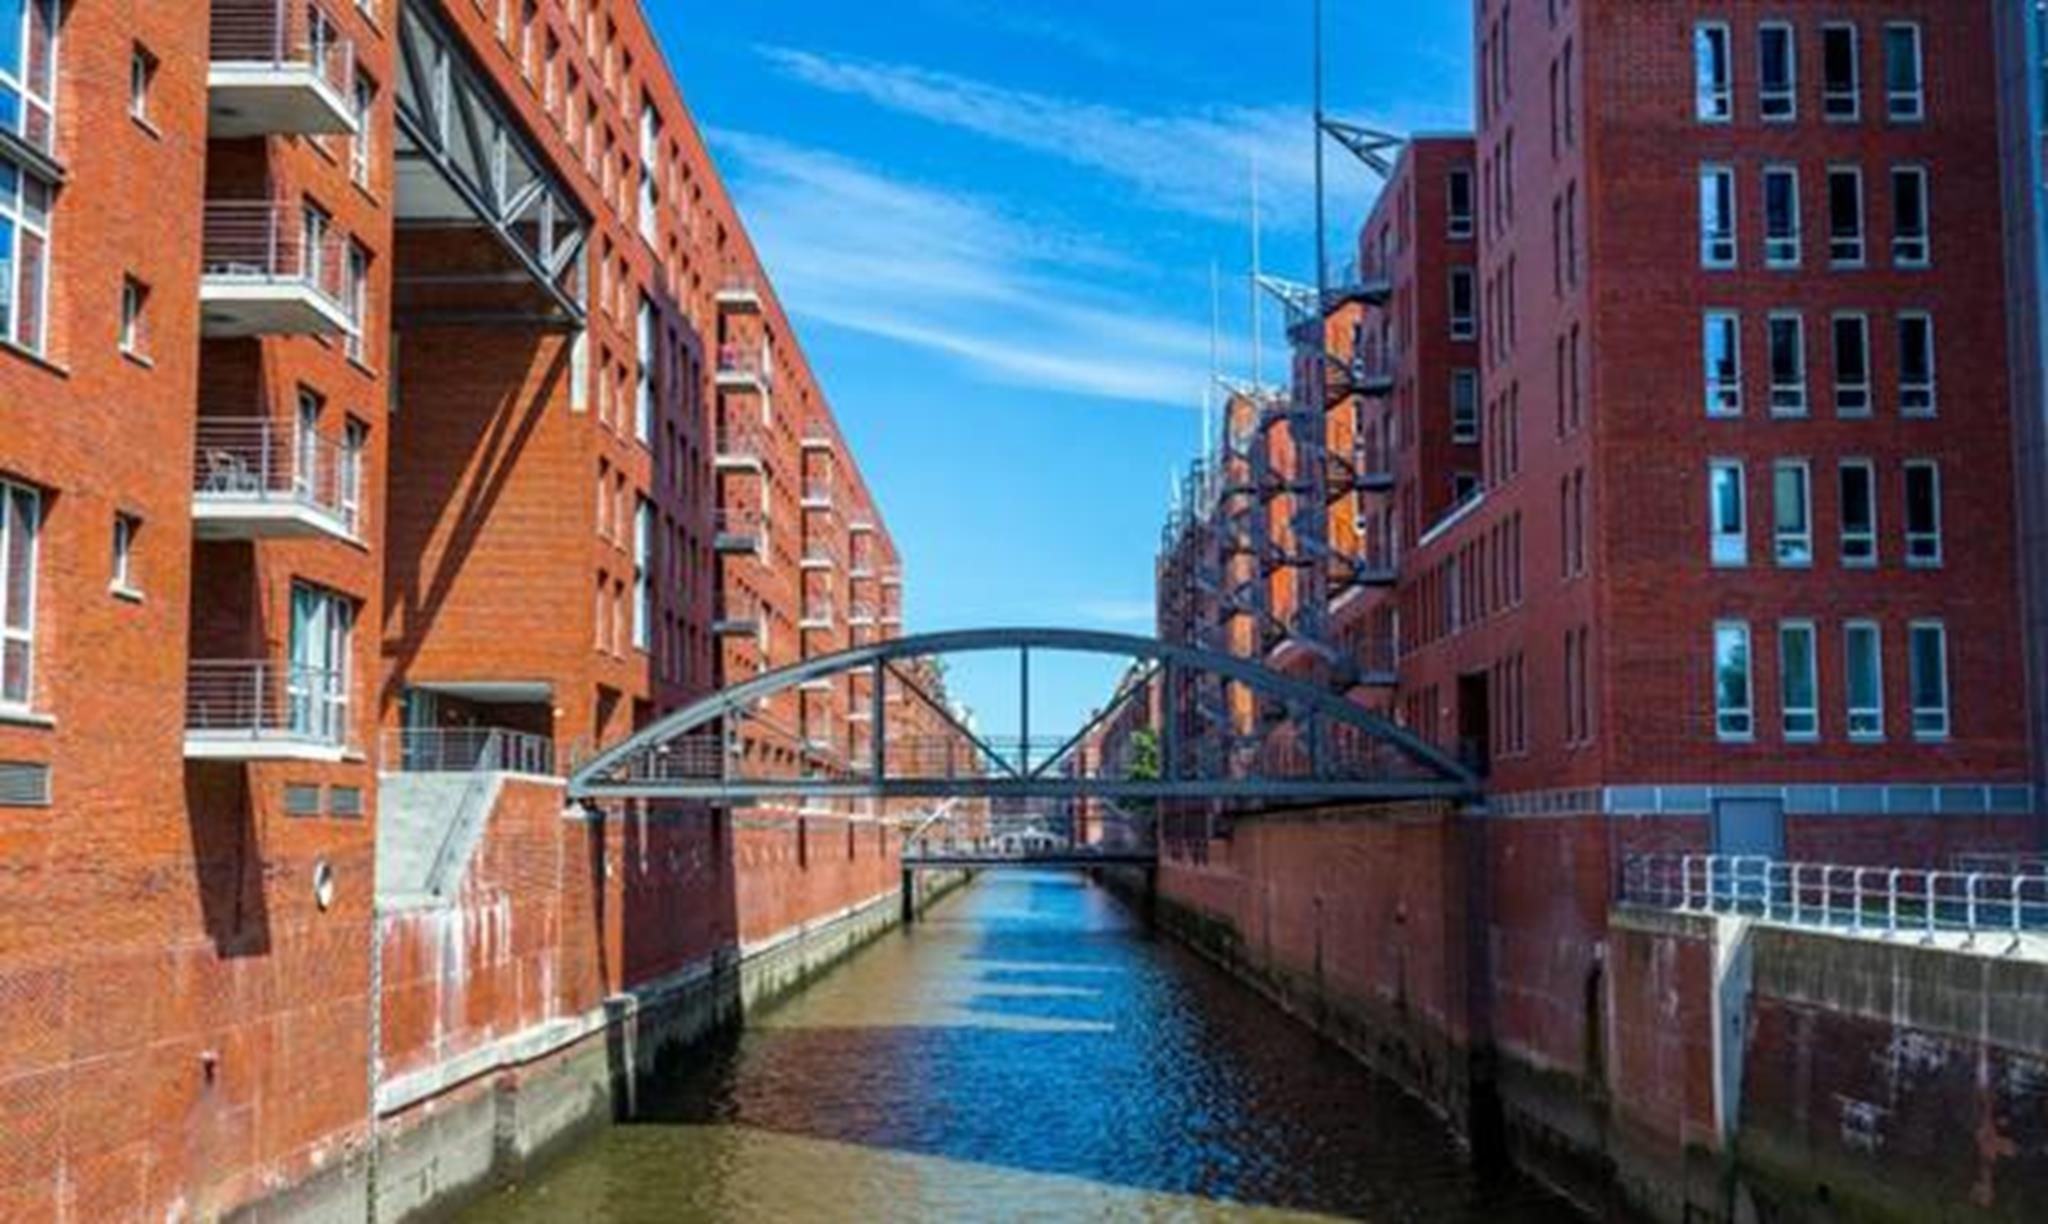 HafenCity mang đến những giải pháp đơn giản cho vấn đề lũ lụt và tình trạng nước biển dâng